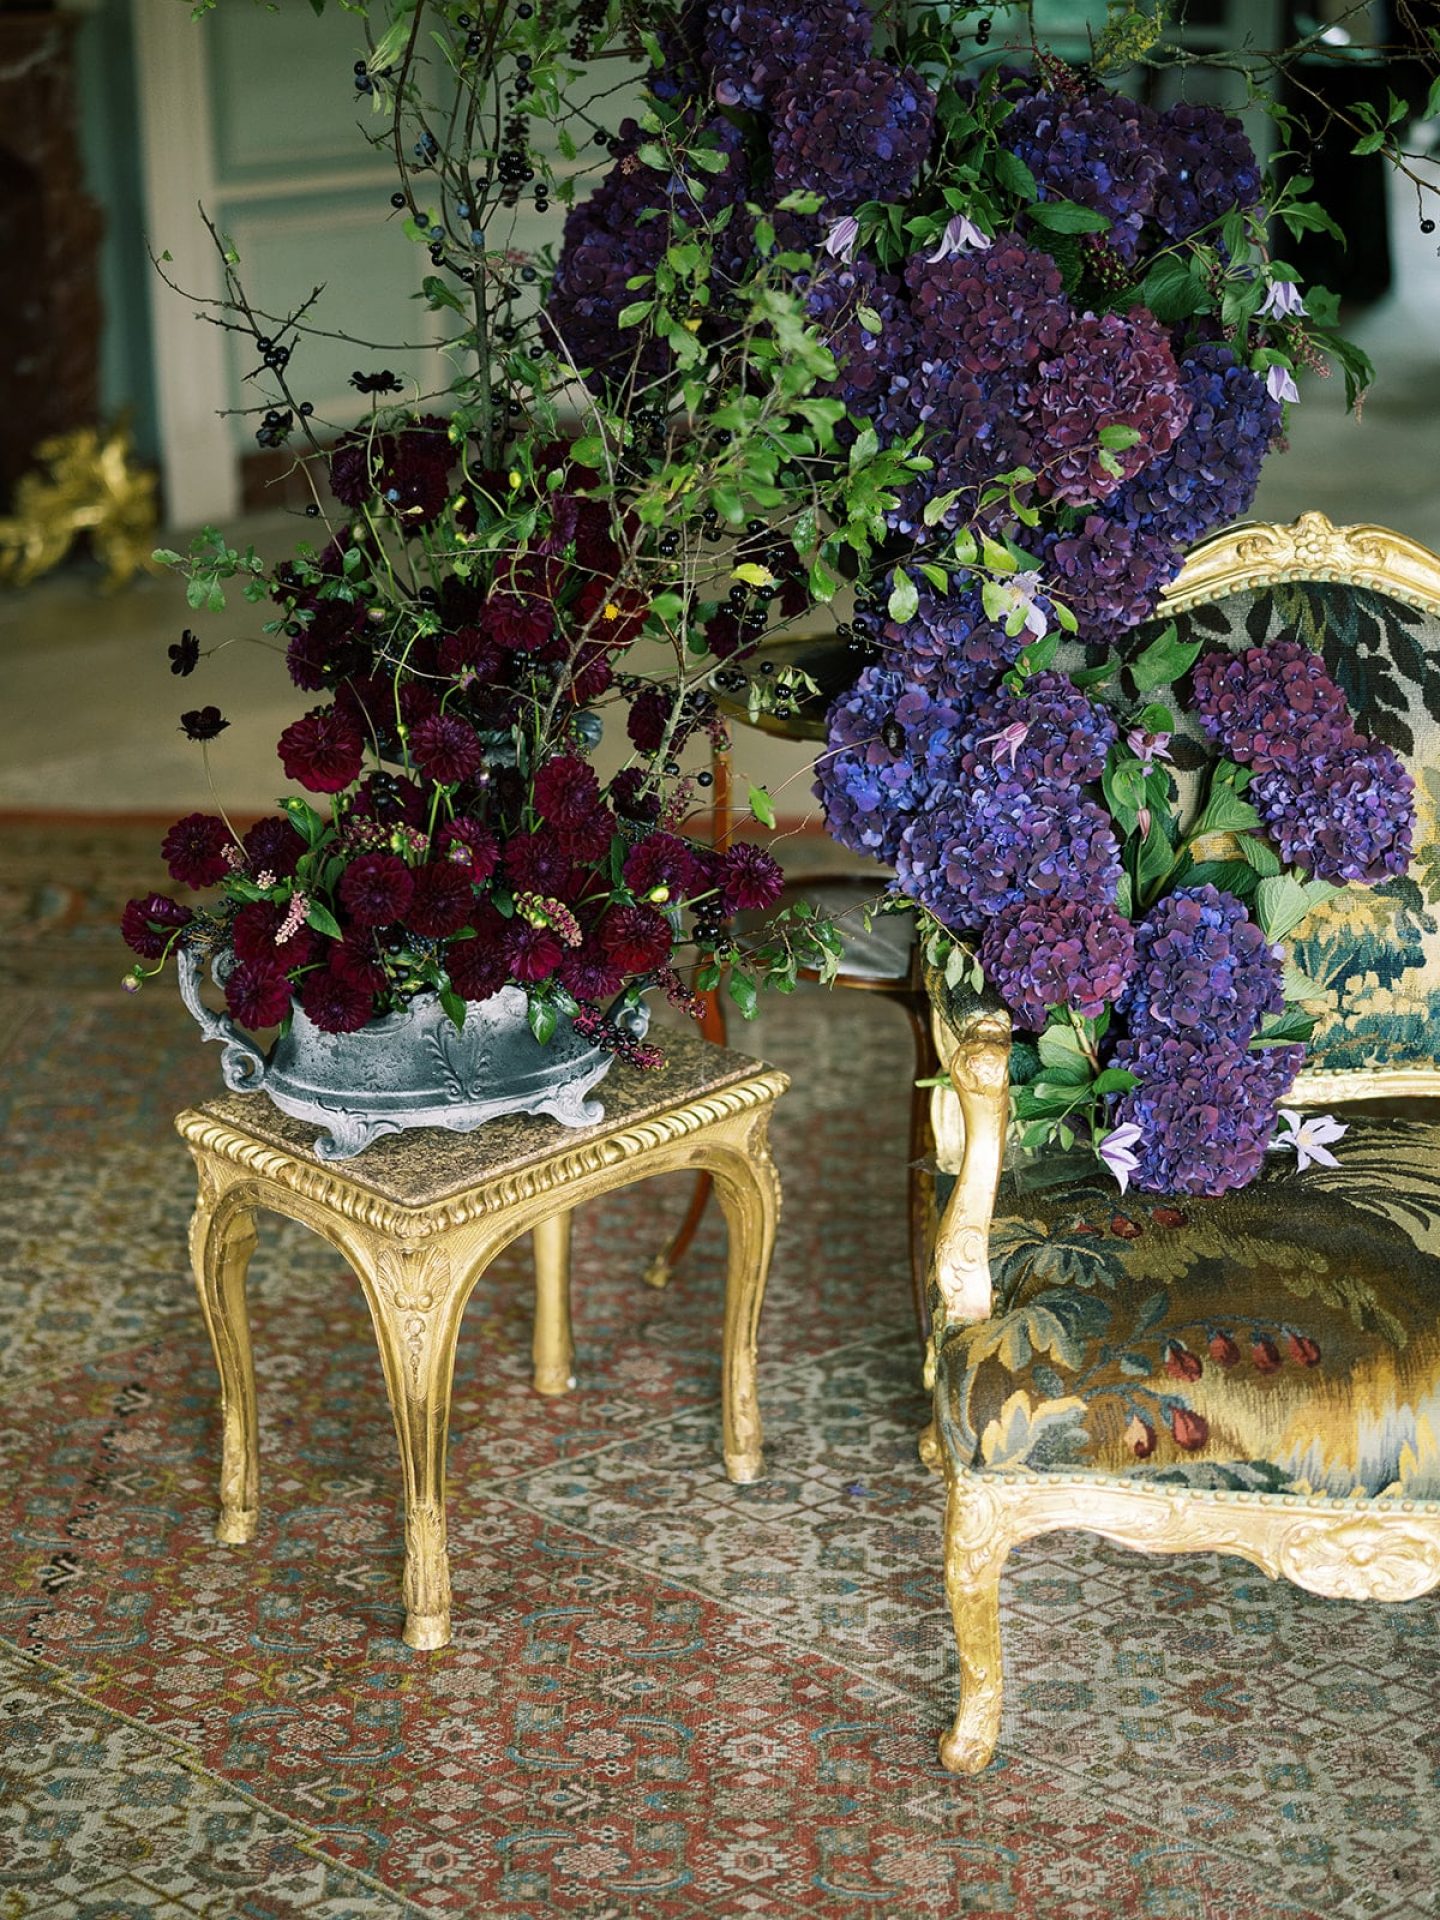 chateau de villette event venue wedding inspiration ideas grand salon red velvet purple flowers-min